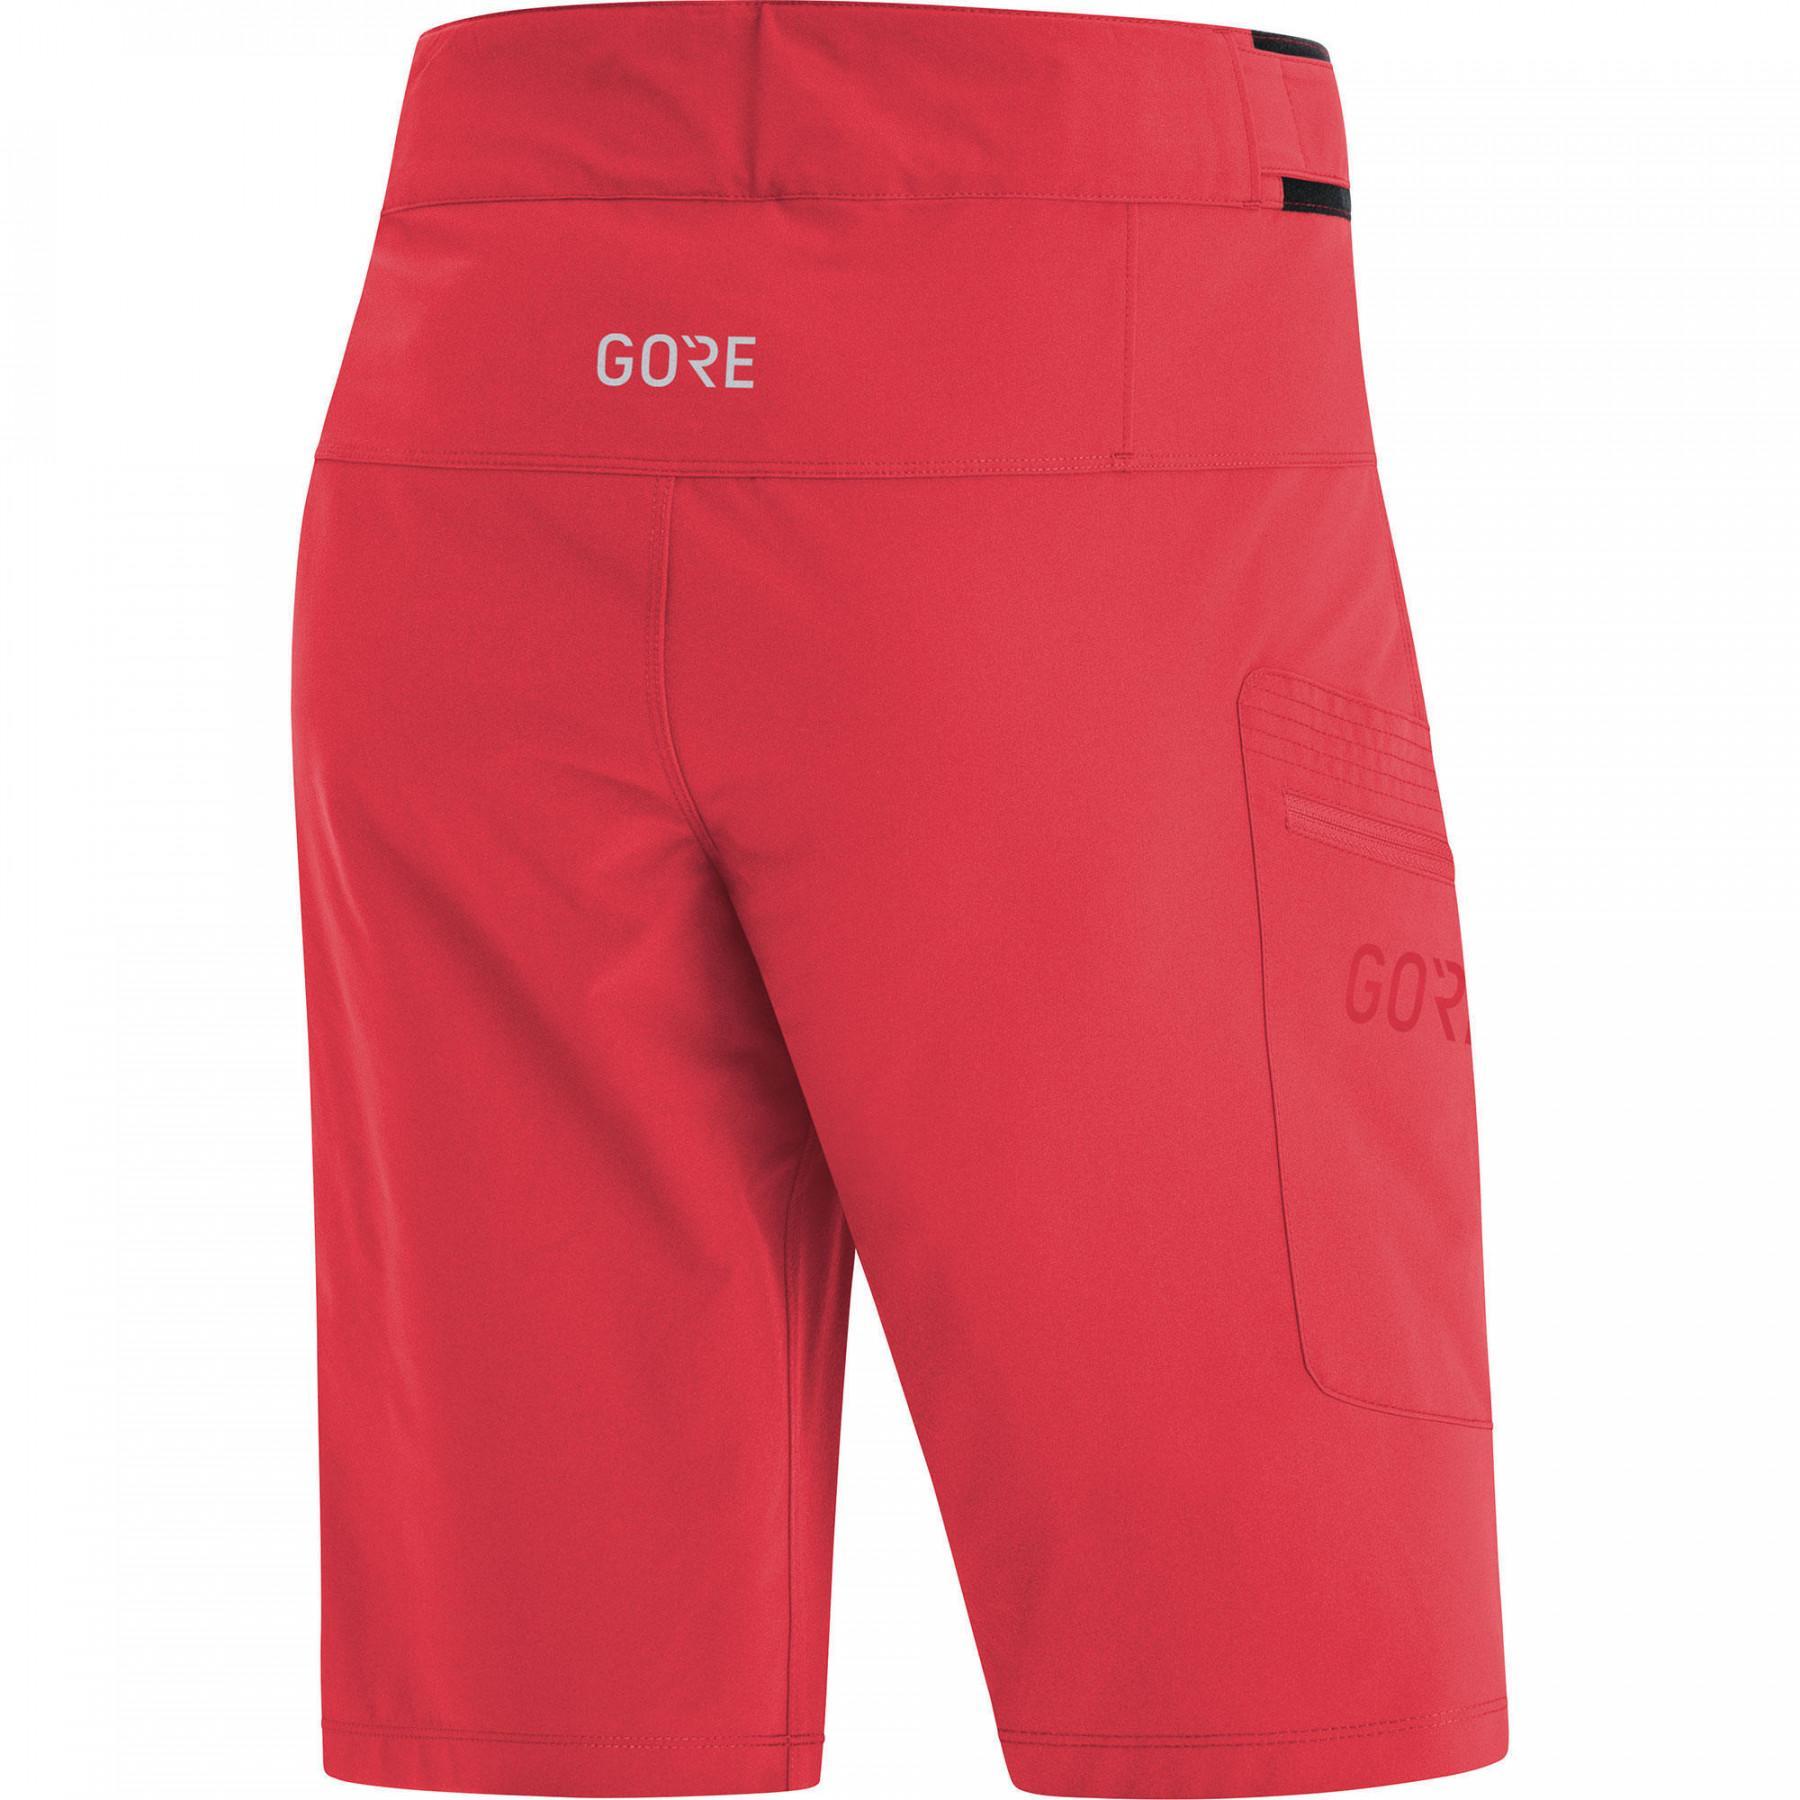 Pantalones cortos de mujer Gore Passion s